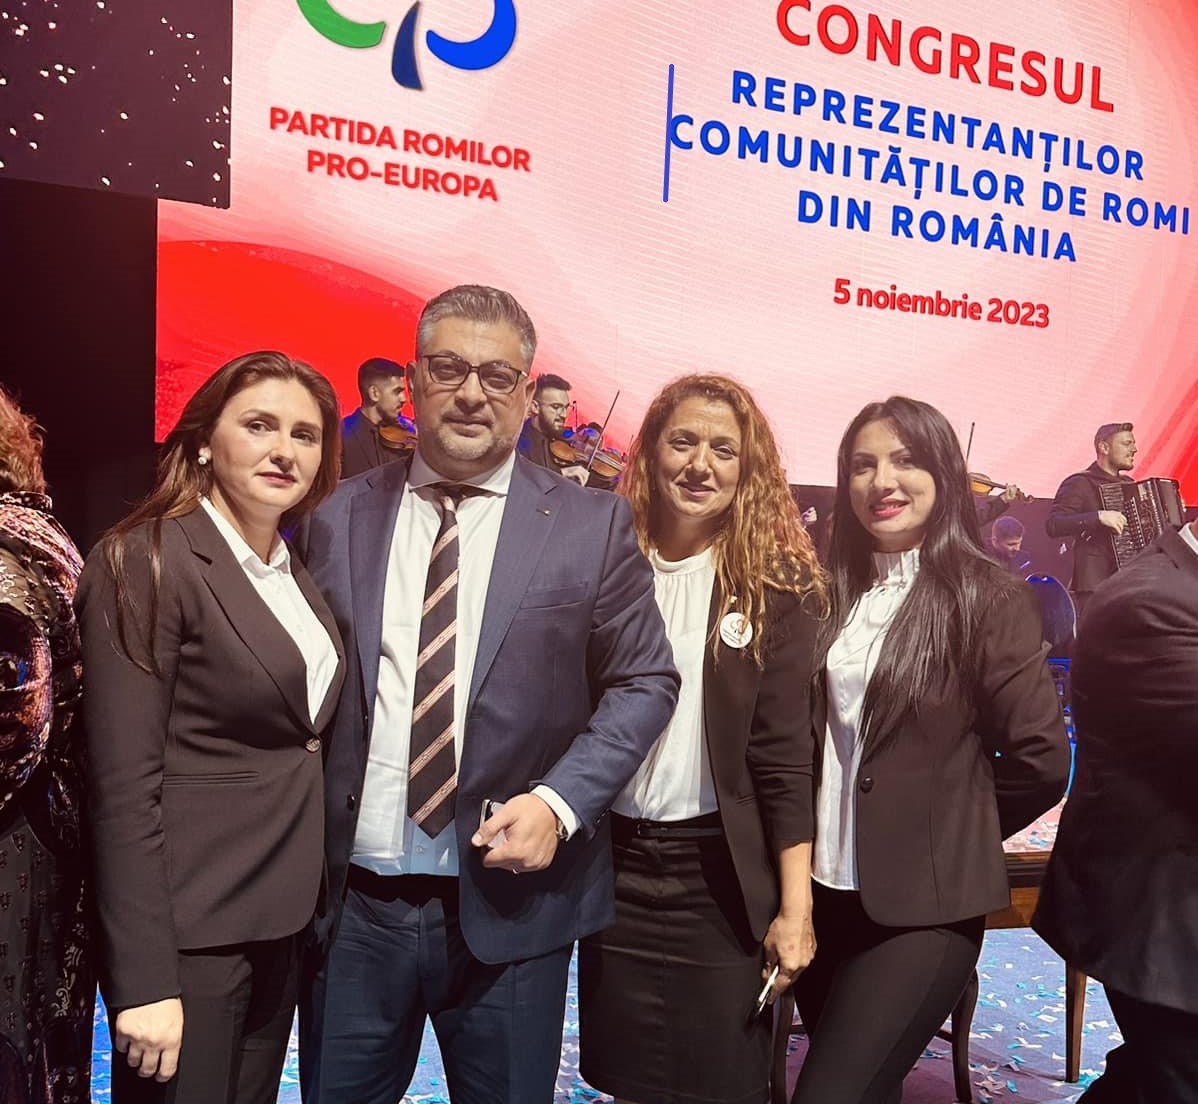 “Mândri că suntem romi”, sloganul cu ocazia Congresului Naţional al comunităţilor rome din România